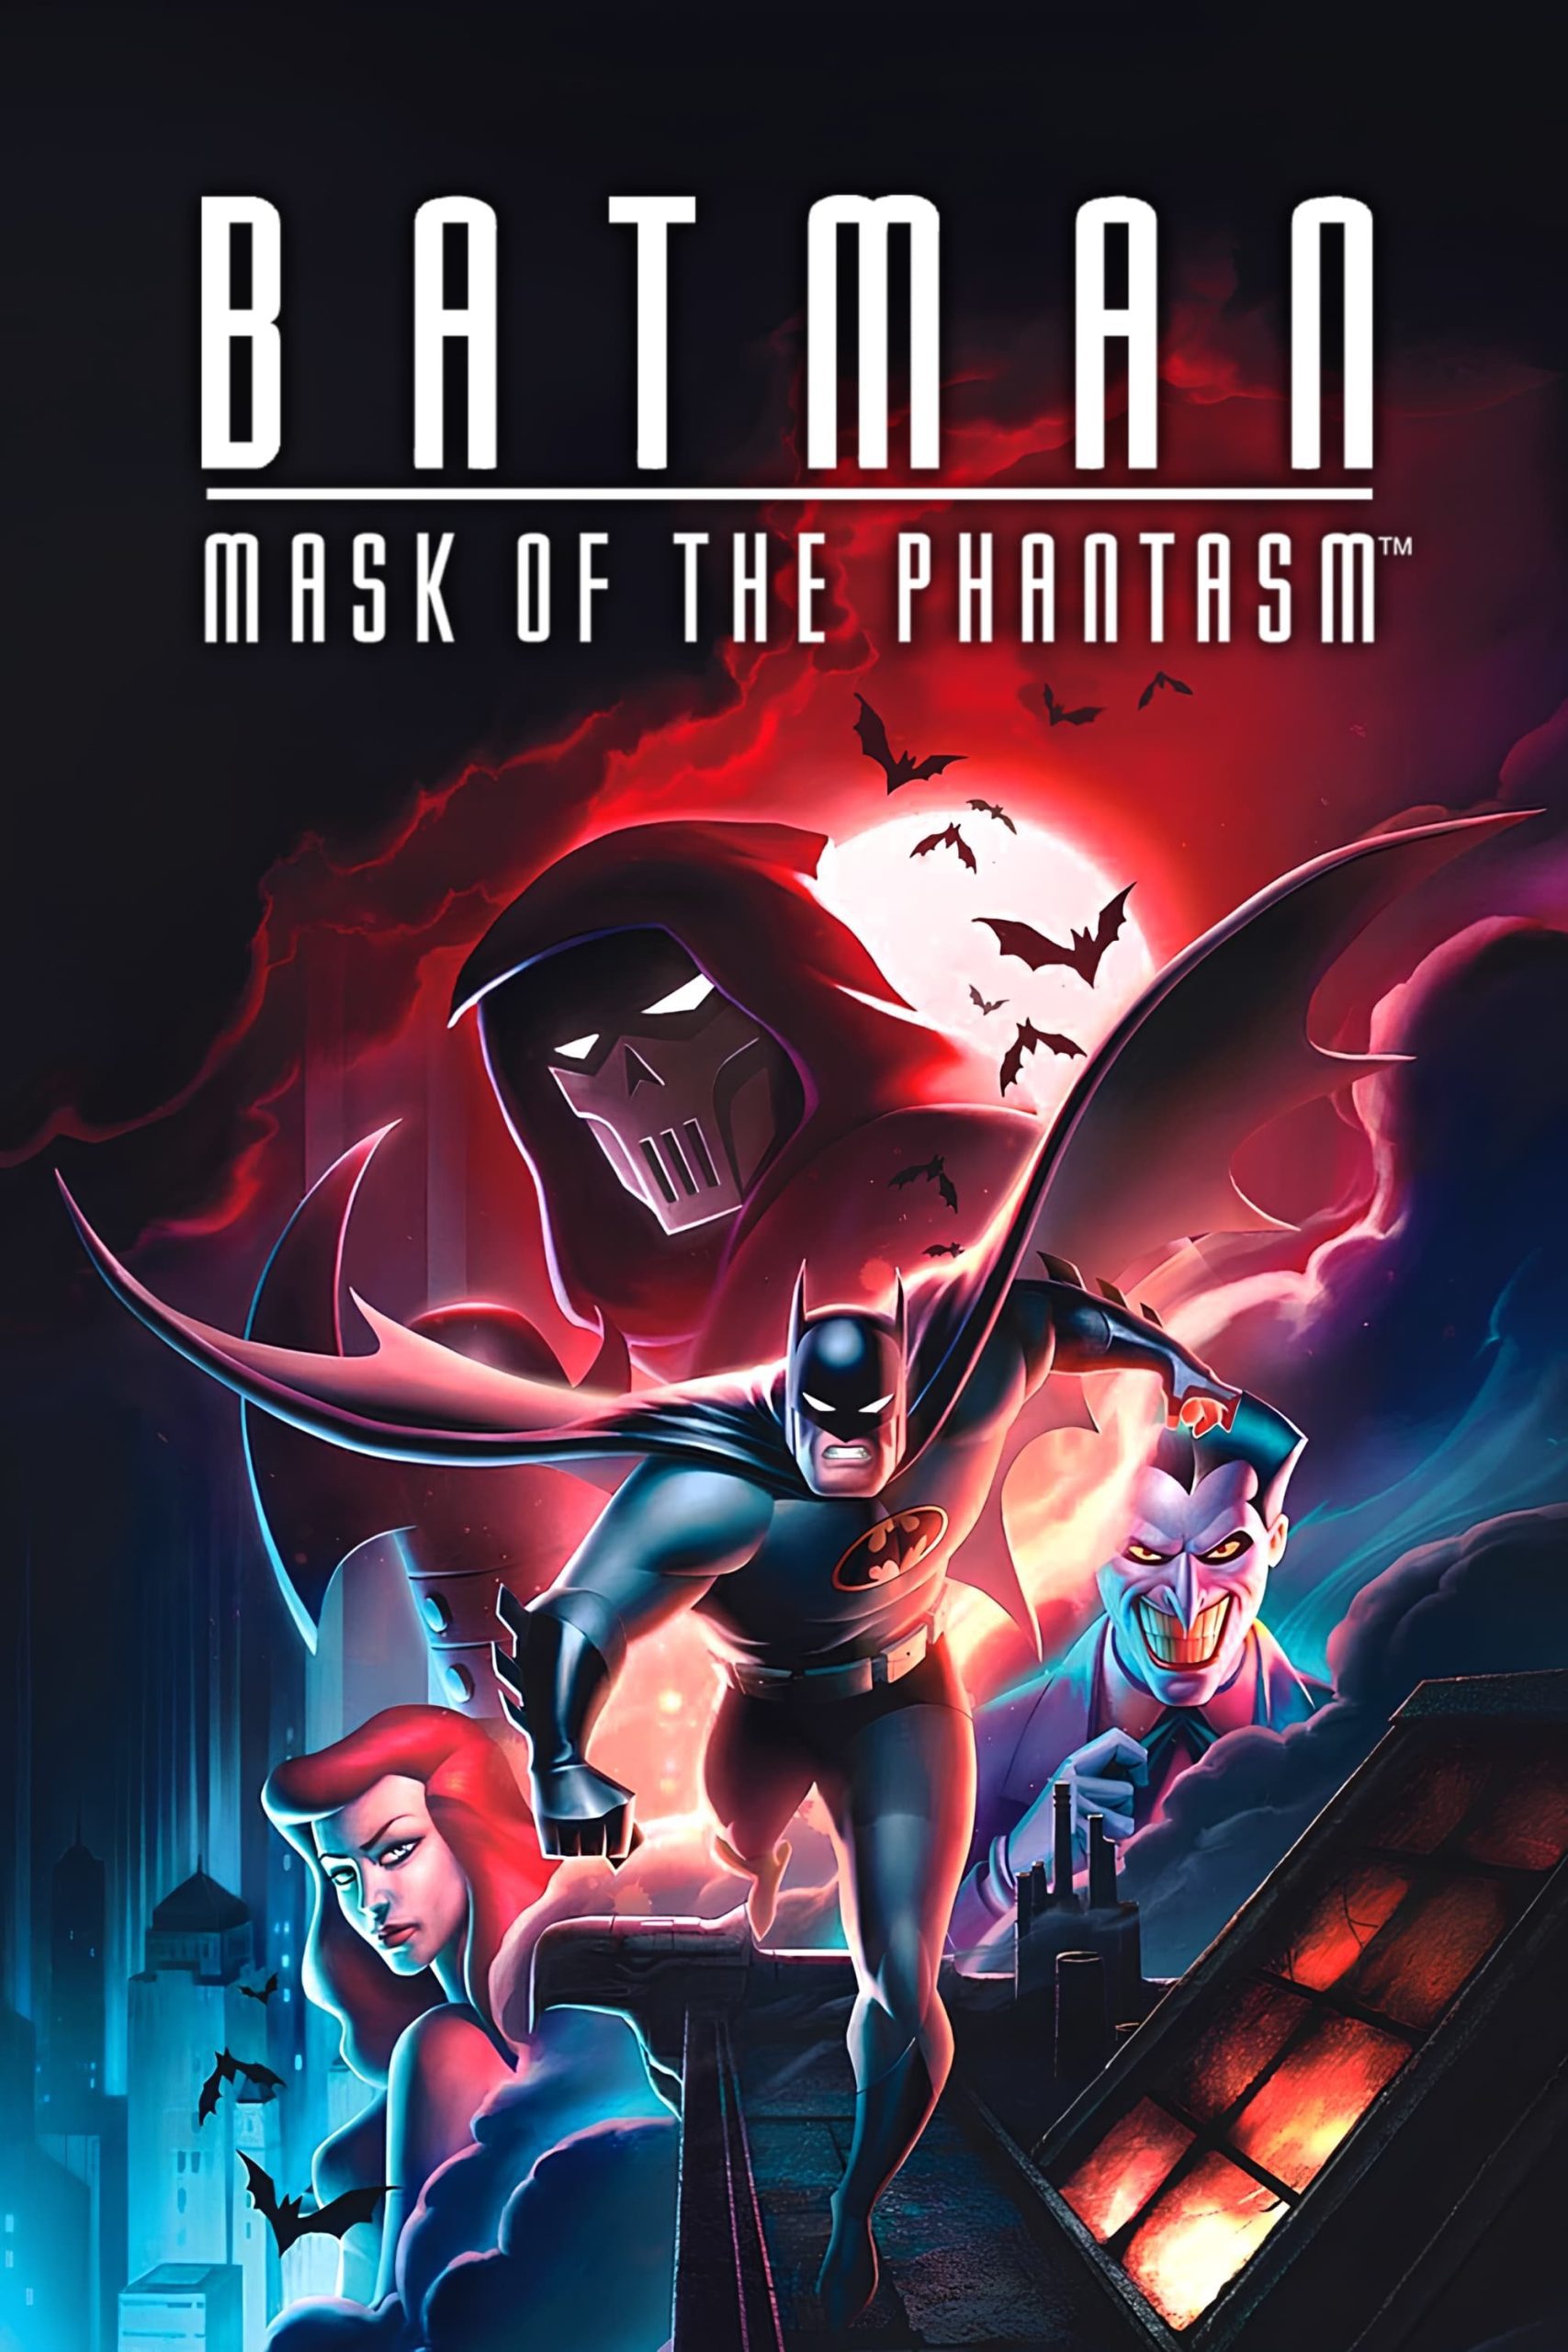 دانلود صوت دوبله انیمیشن Batman: Mask of the Phantasm